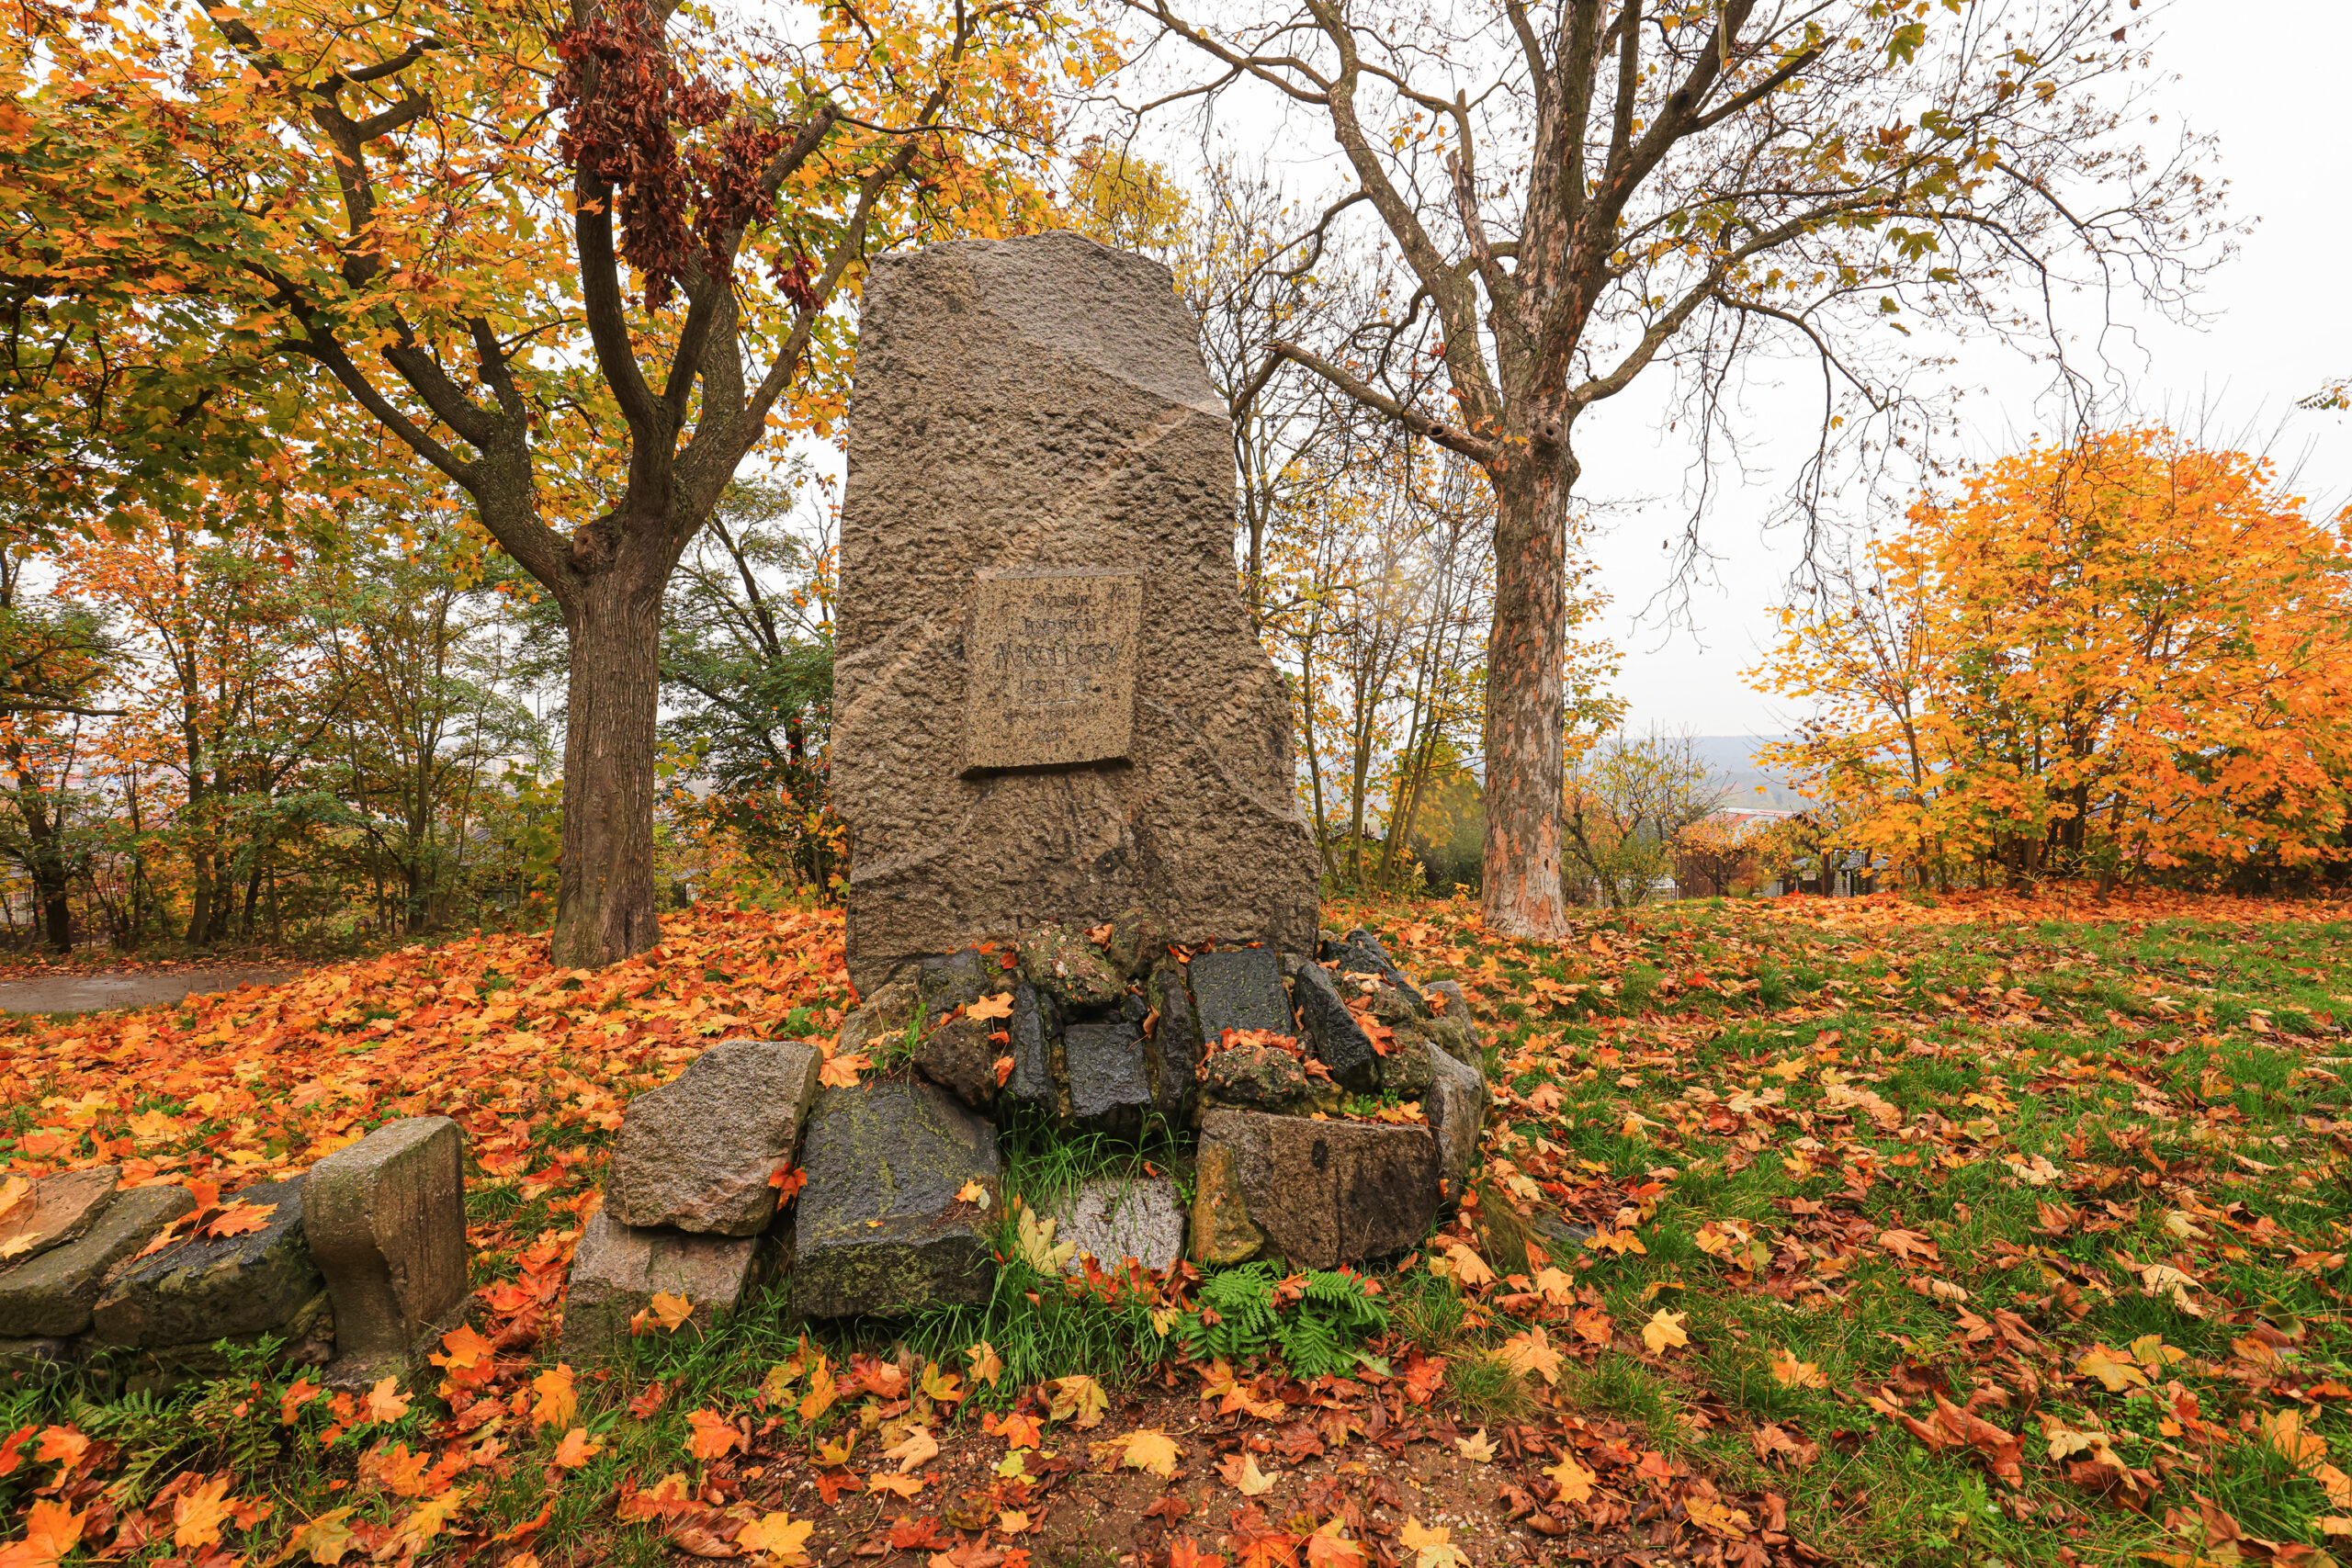 <h1>Vrch Mikulka – pomník Jindřicha Mikoleckého</h1><br />
Ve středu snímku stojící kamenný pomník s vystupující deskou. Okolo kosený trávník pokrytý zářivě barevnými listy. Zadní polovinu tvoří stromy v podzimních barvách.